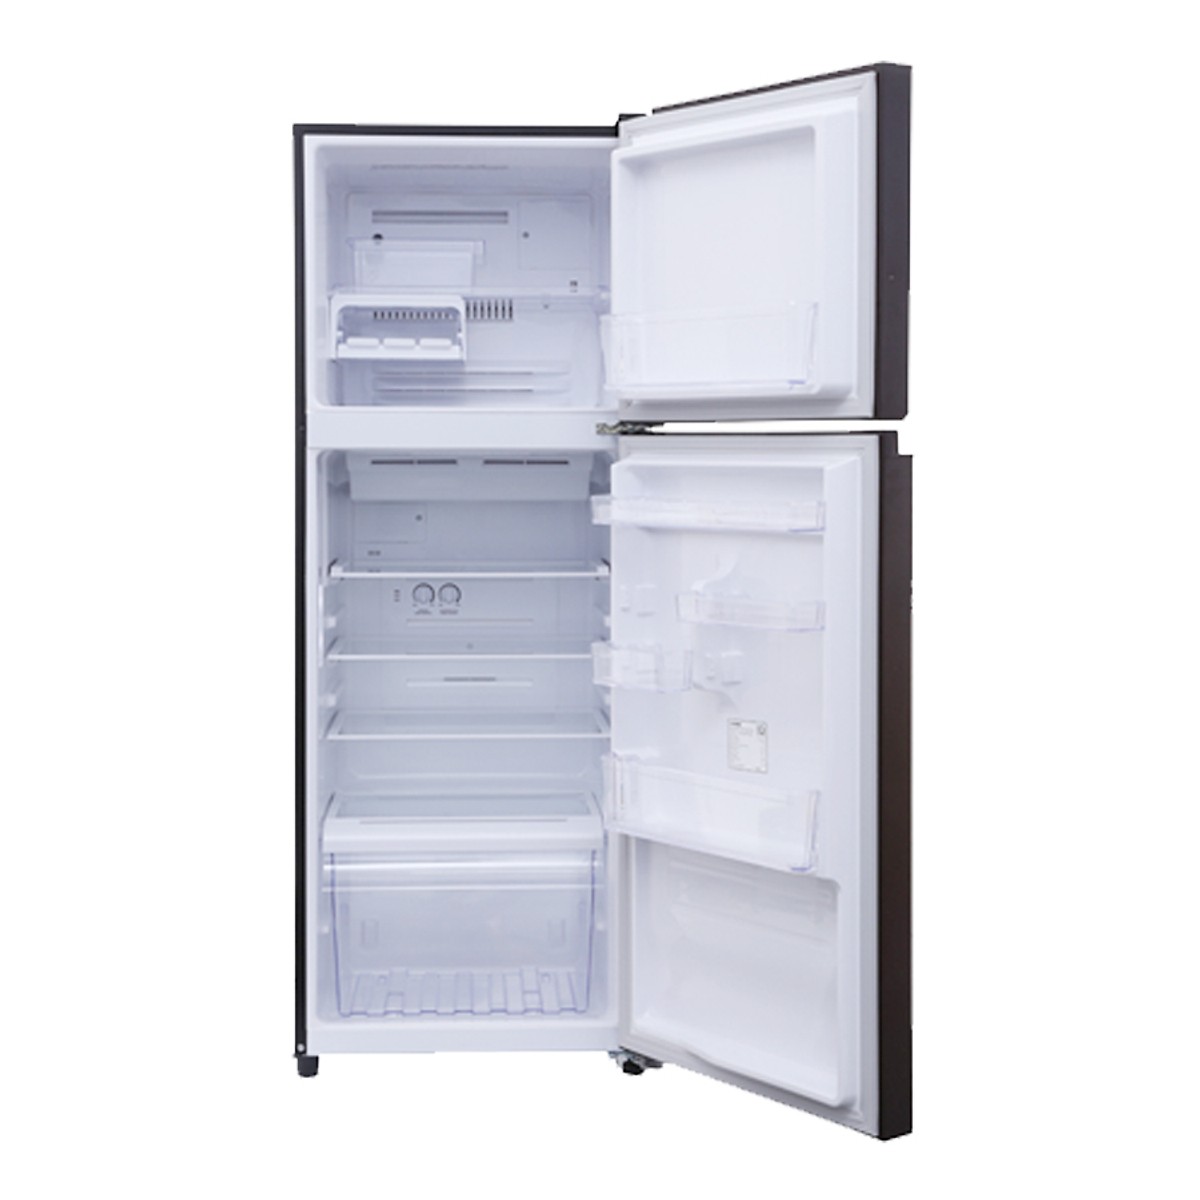 Tủ lạnh Toshiba Inverter 305 lít GR-AG36VUBZ(XK1) - Hàng chính hãng + Tặng Bình Đun Siêu Tốc